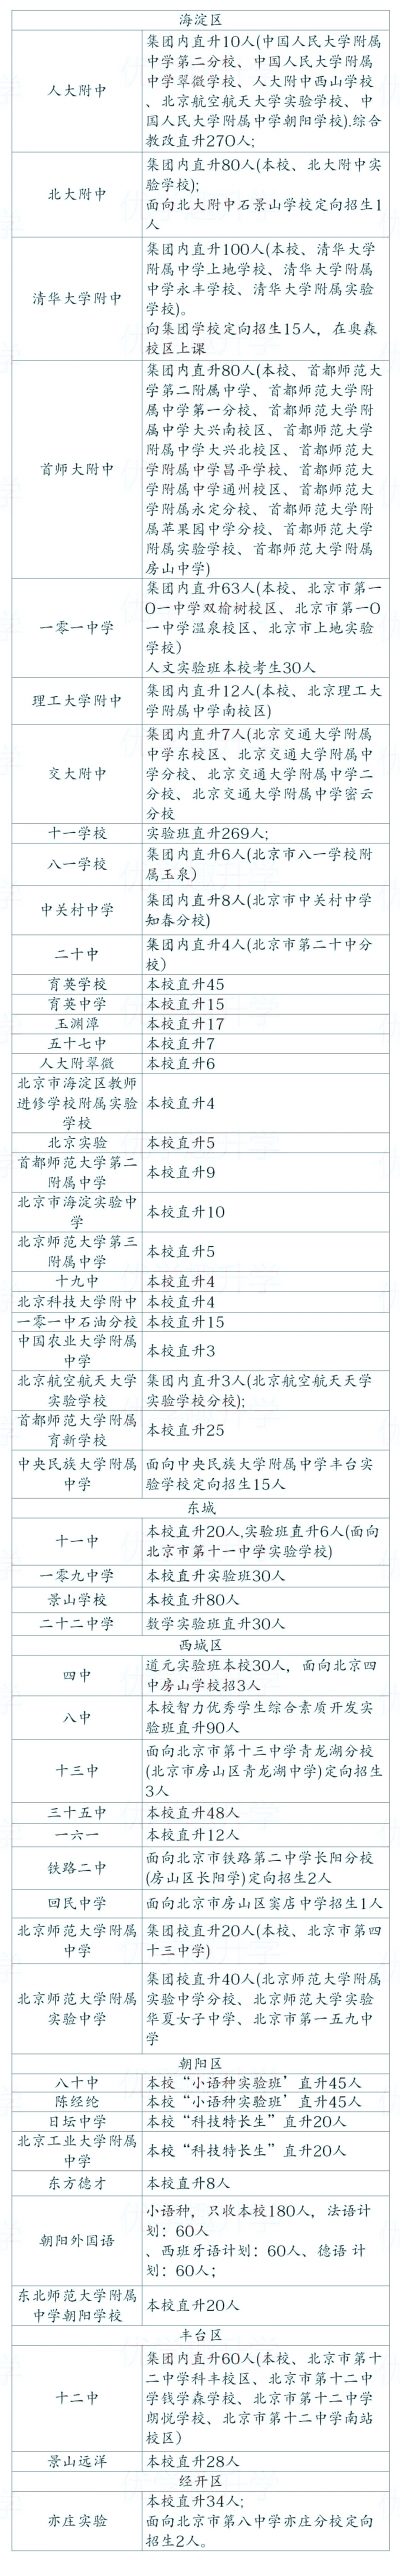 北京市初中直升高中的学校以及名额发布！